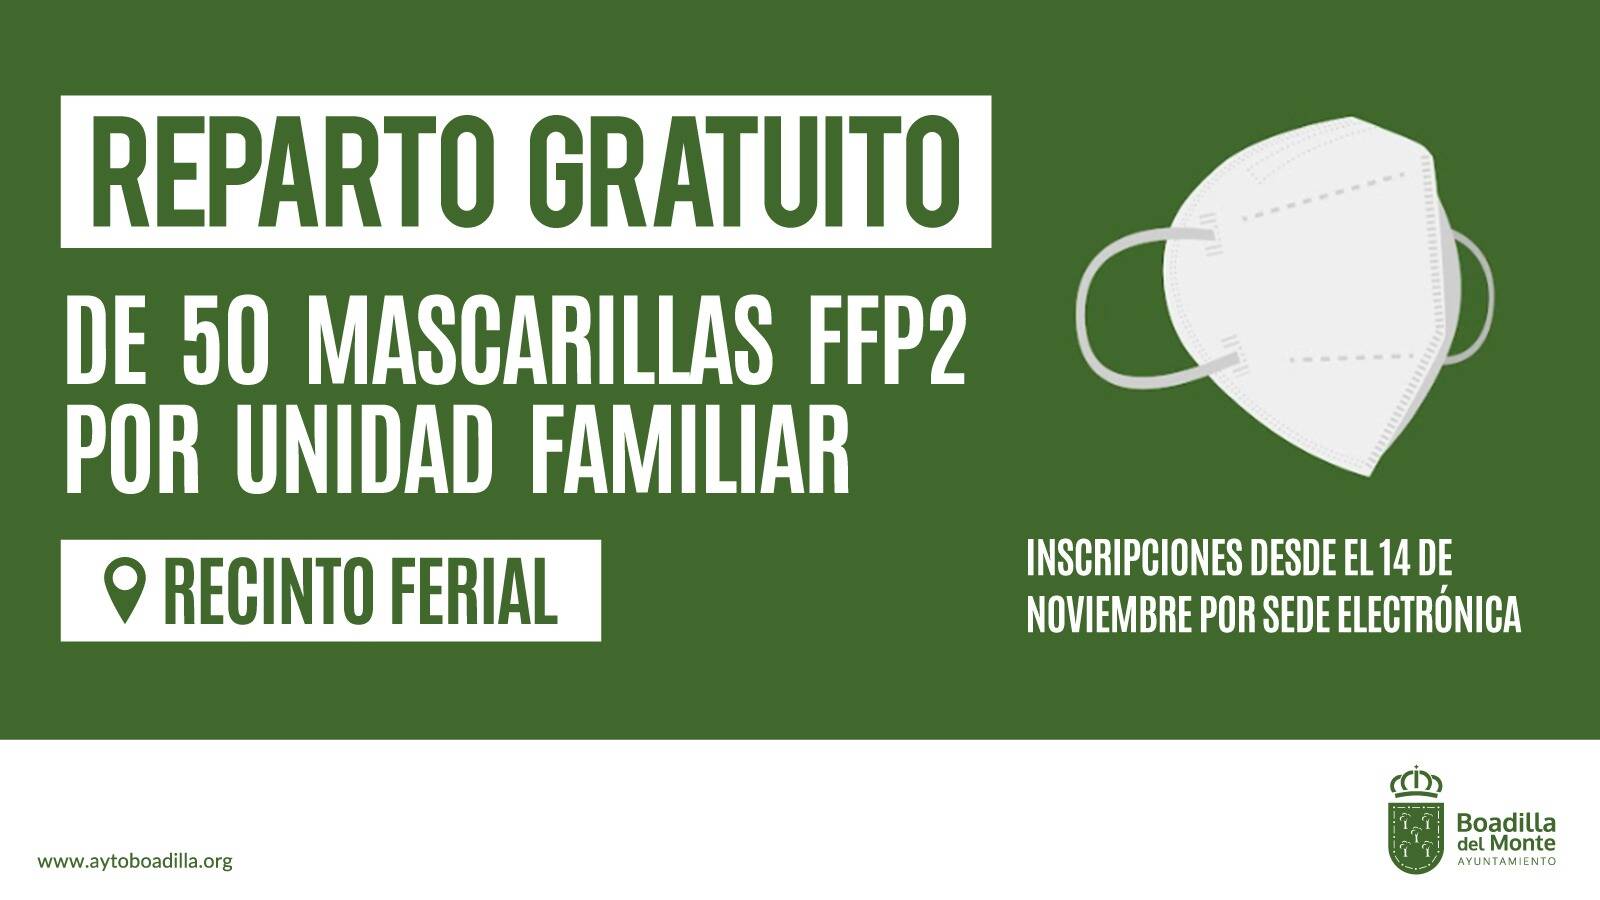 Nuevo reparto gratuito de mascarillas FFP2 entre los vecinos de Boadilla